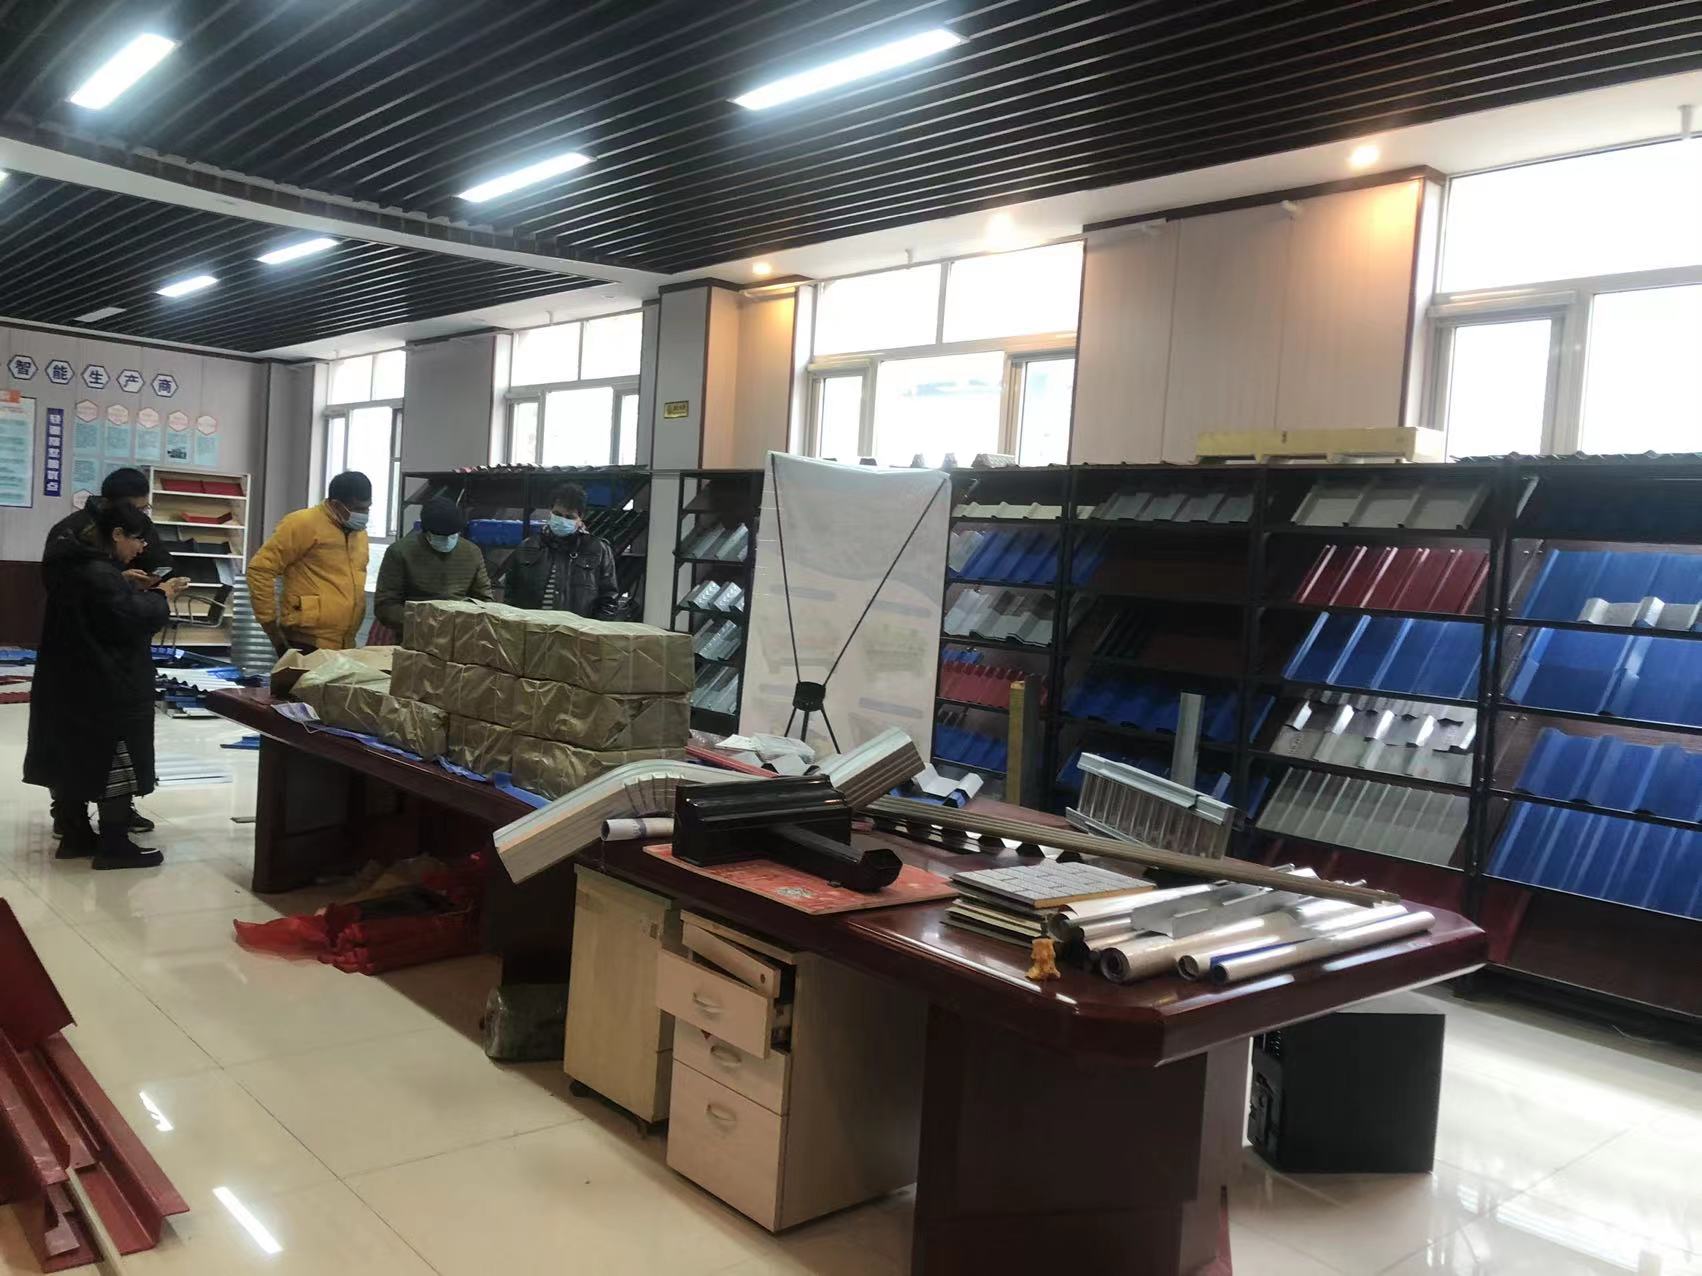 Forming is na Zhongke Factory vir ter plaatse inspeksie en onderhandeling